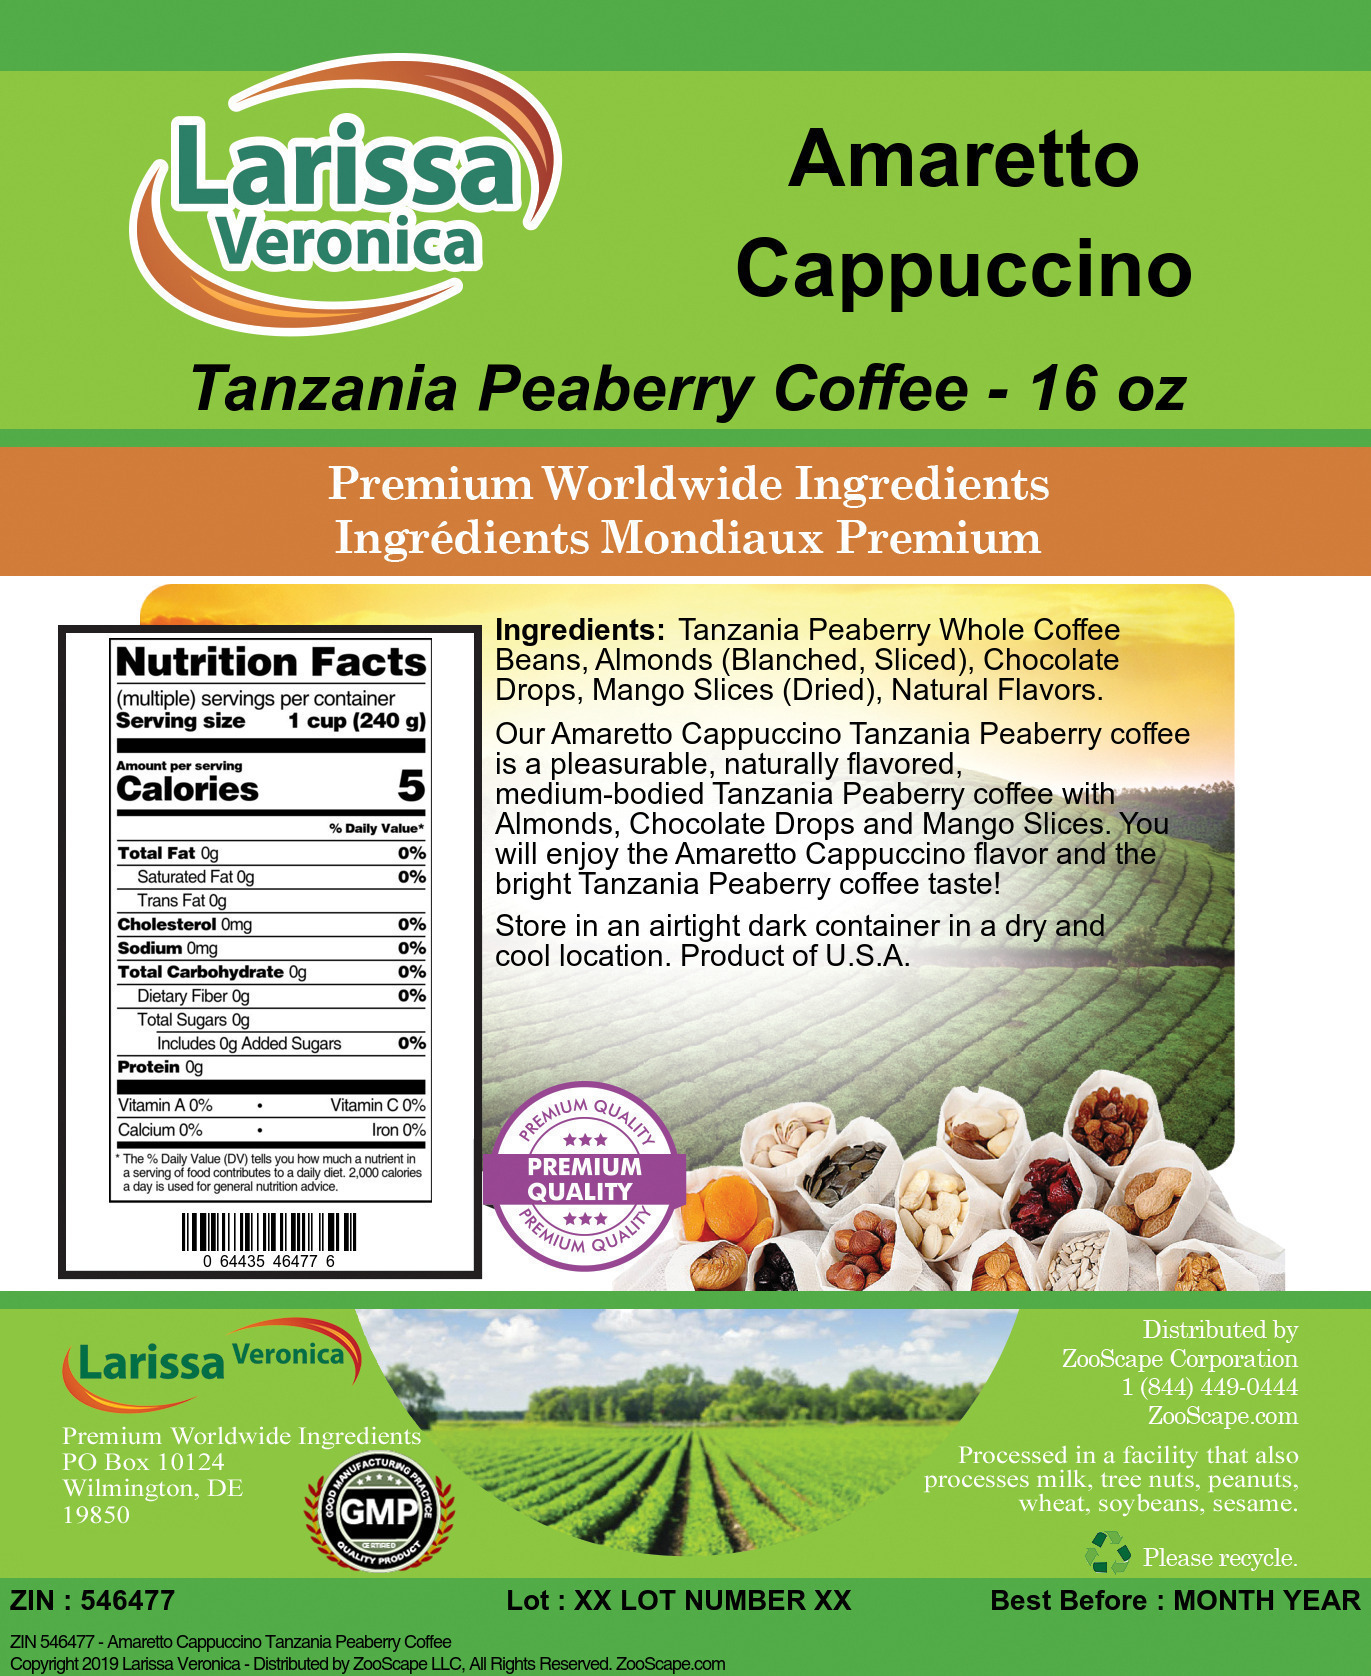 Amaretto Cappuccino Tanzania Peaberry Coffee - Label